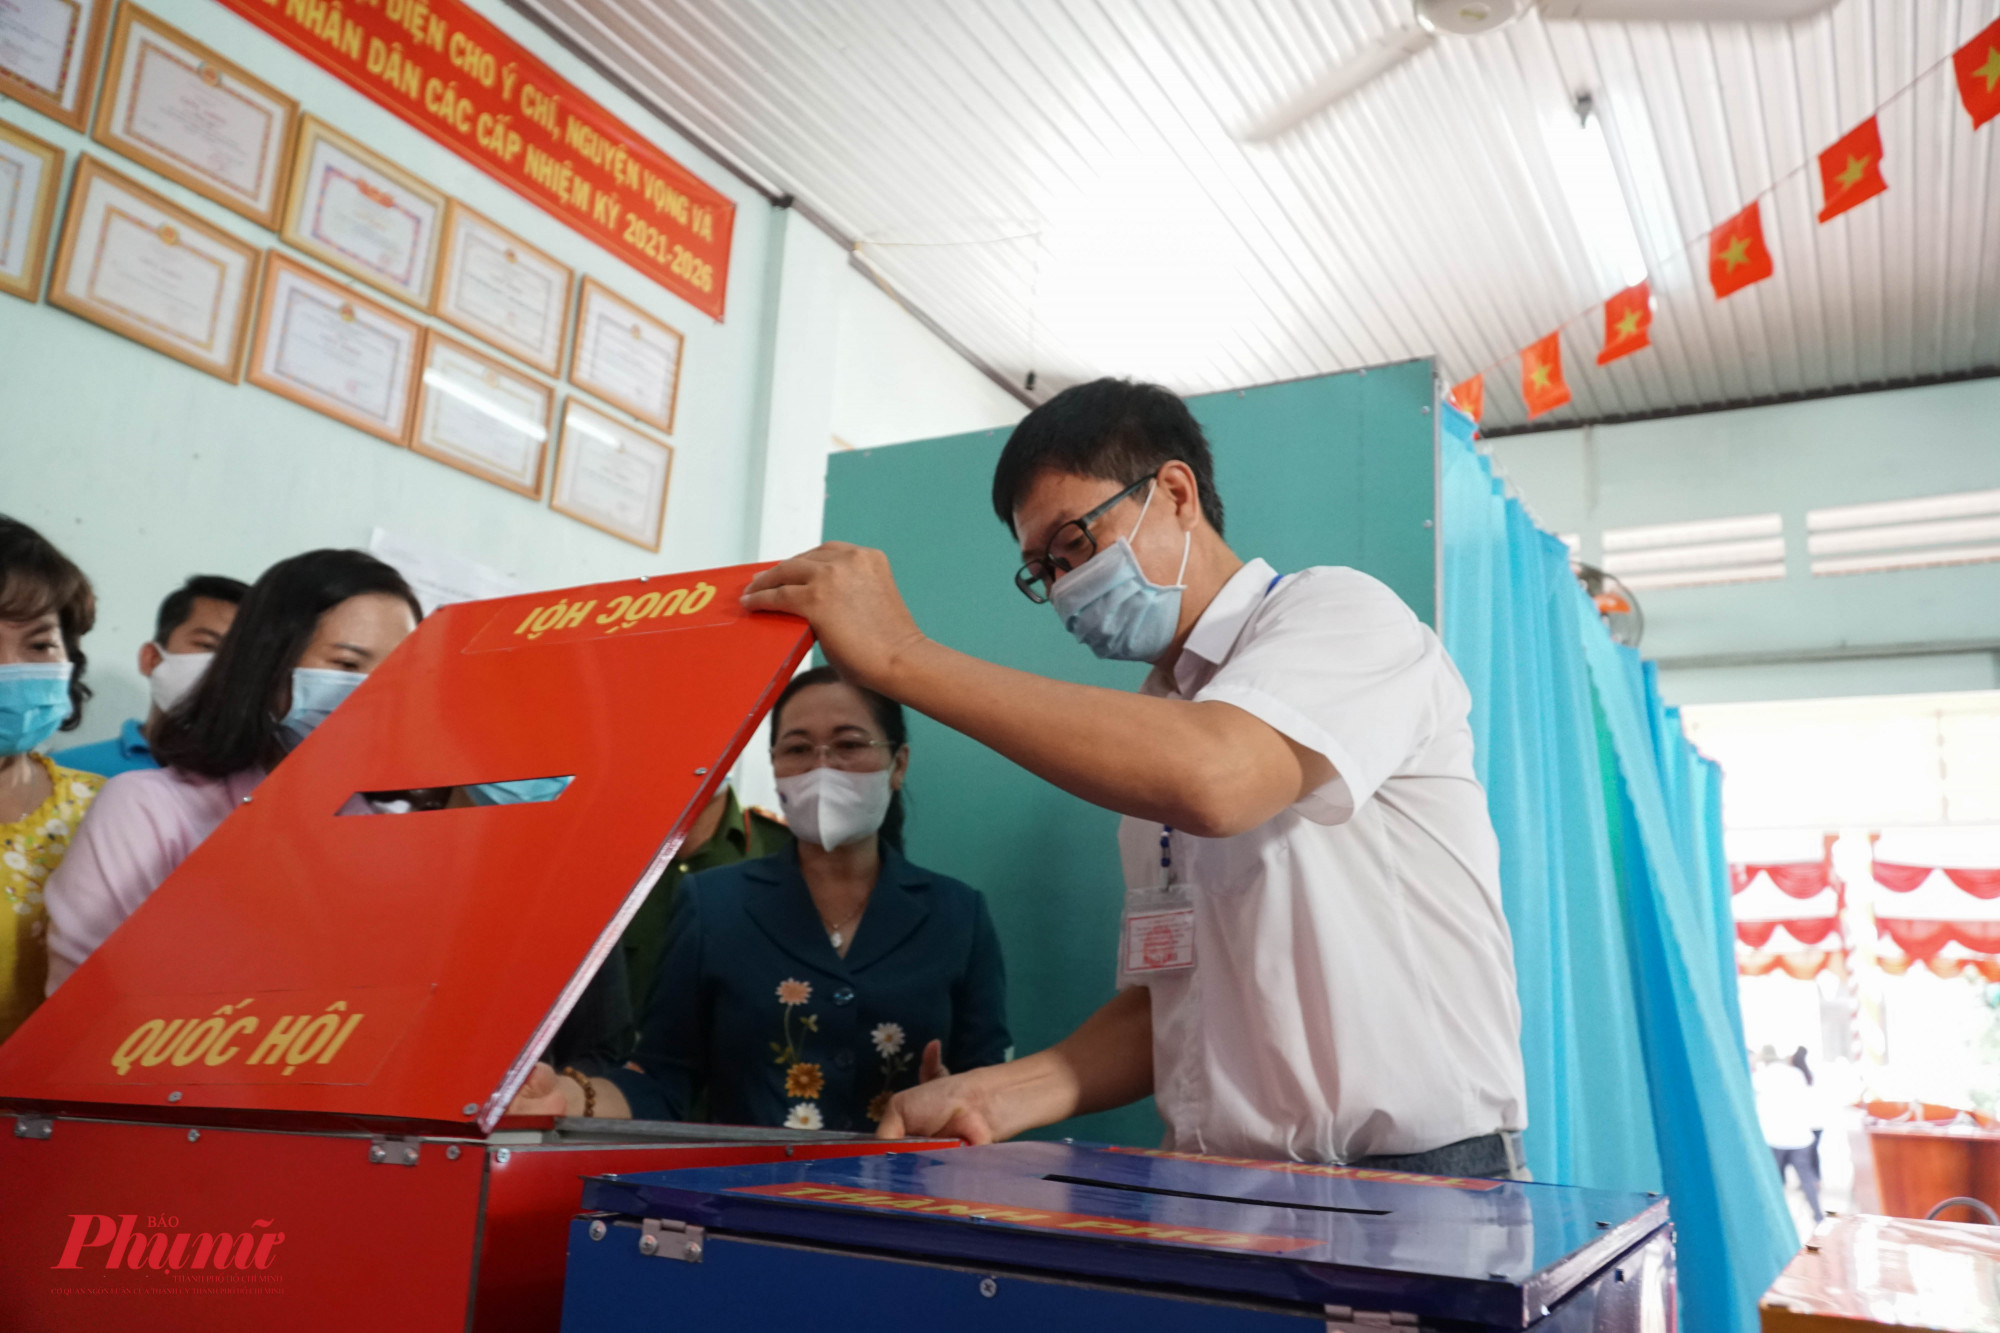 Môi thùng phiếu, bà Nguyễn Thị Lệ đều yêu cầu mở ra kiểm tra cho chắc chắn